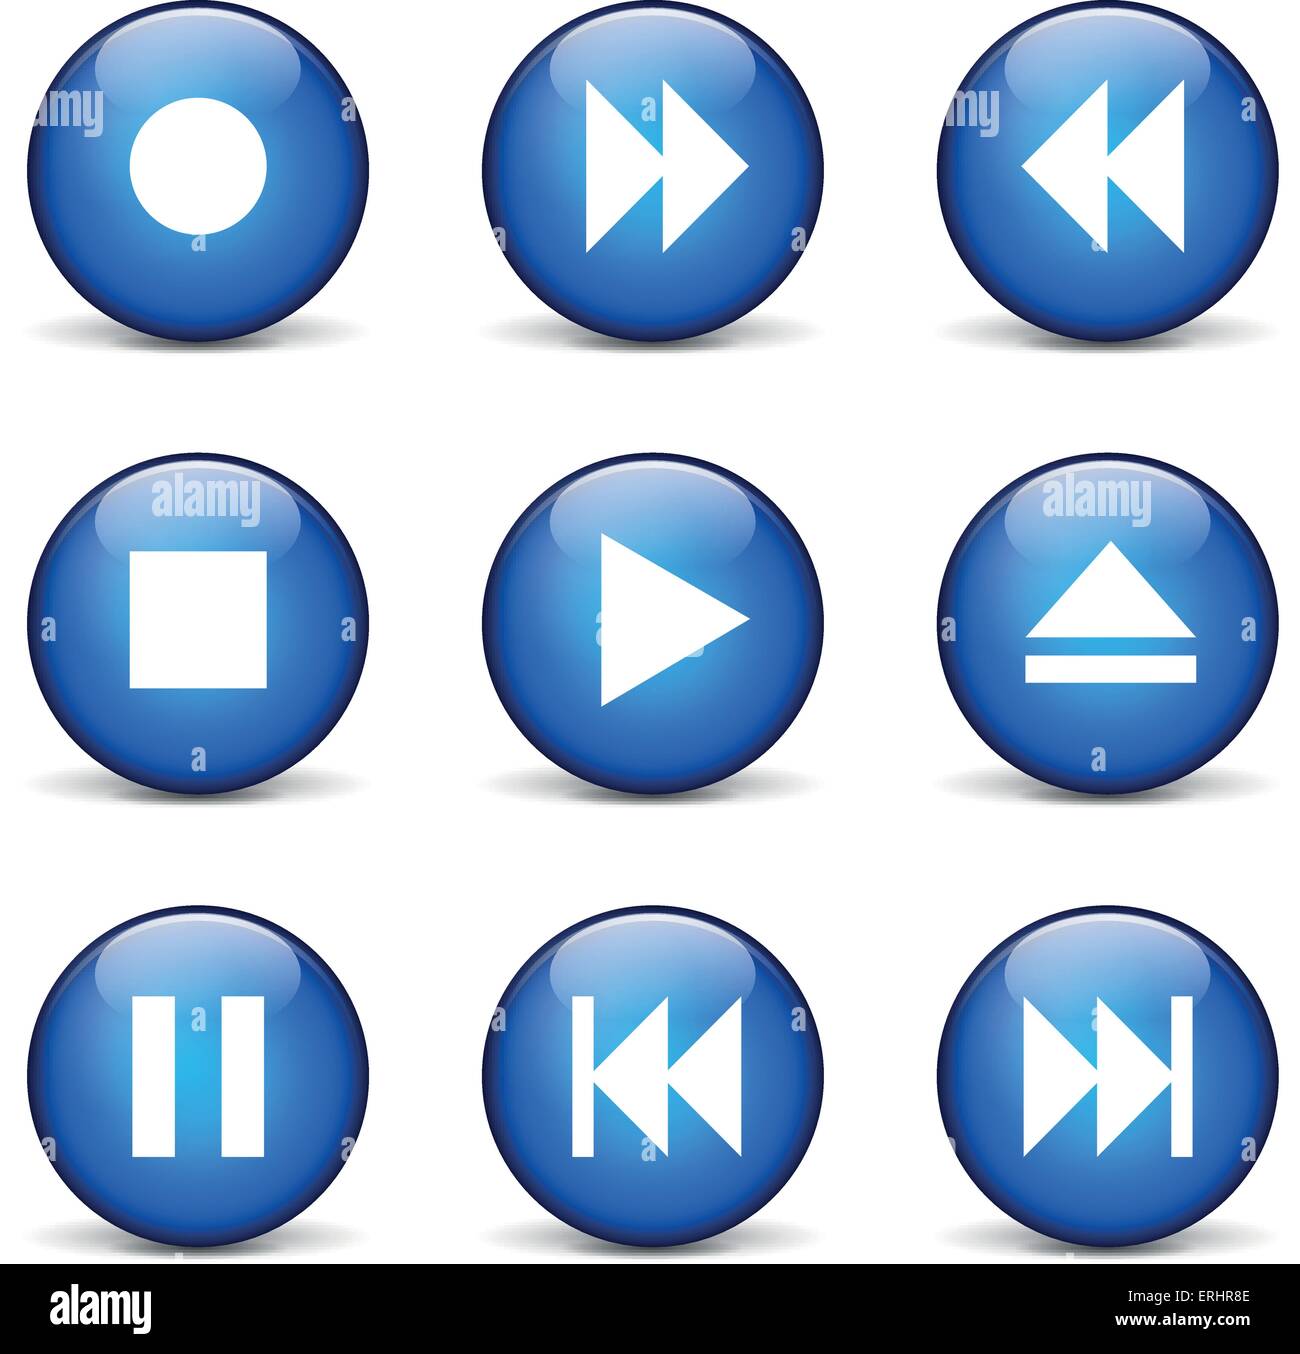 Vektor-Illustration von Multimedia-Set Icons auf weißem Hintergrund Stock Vektor